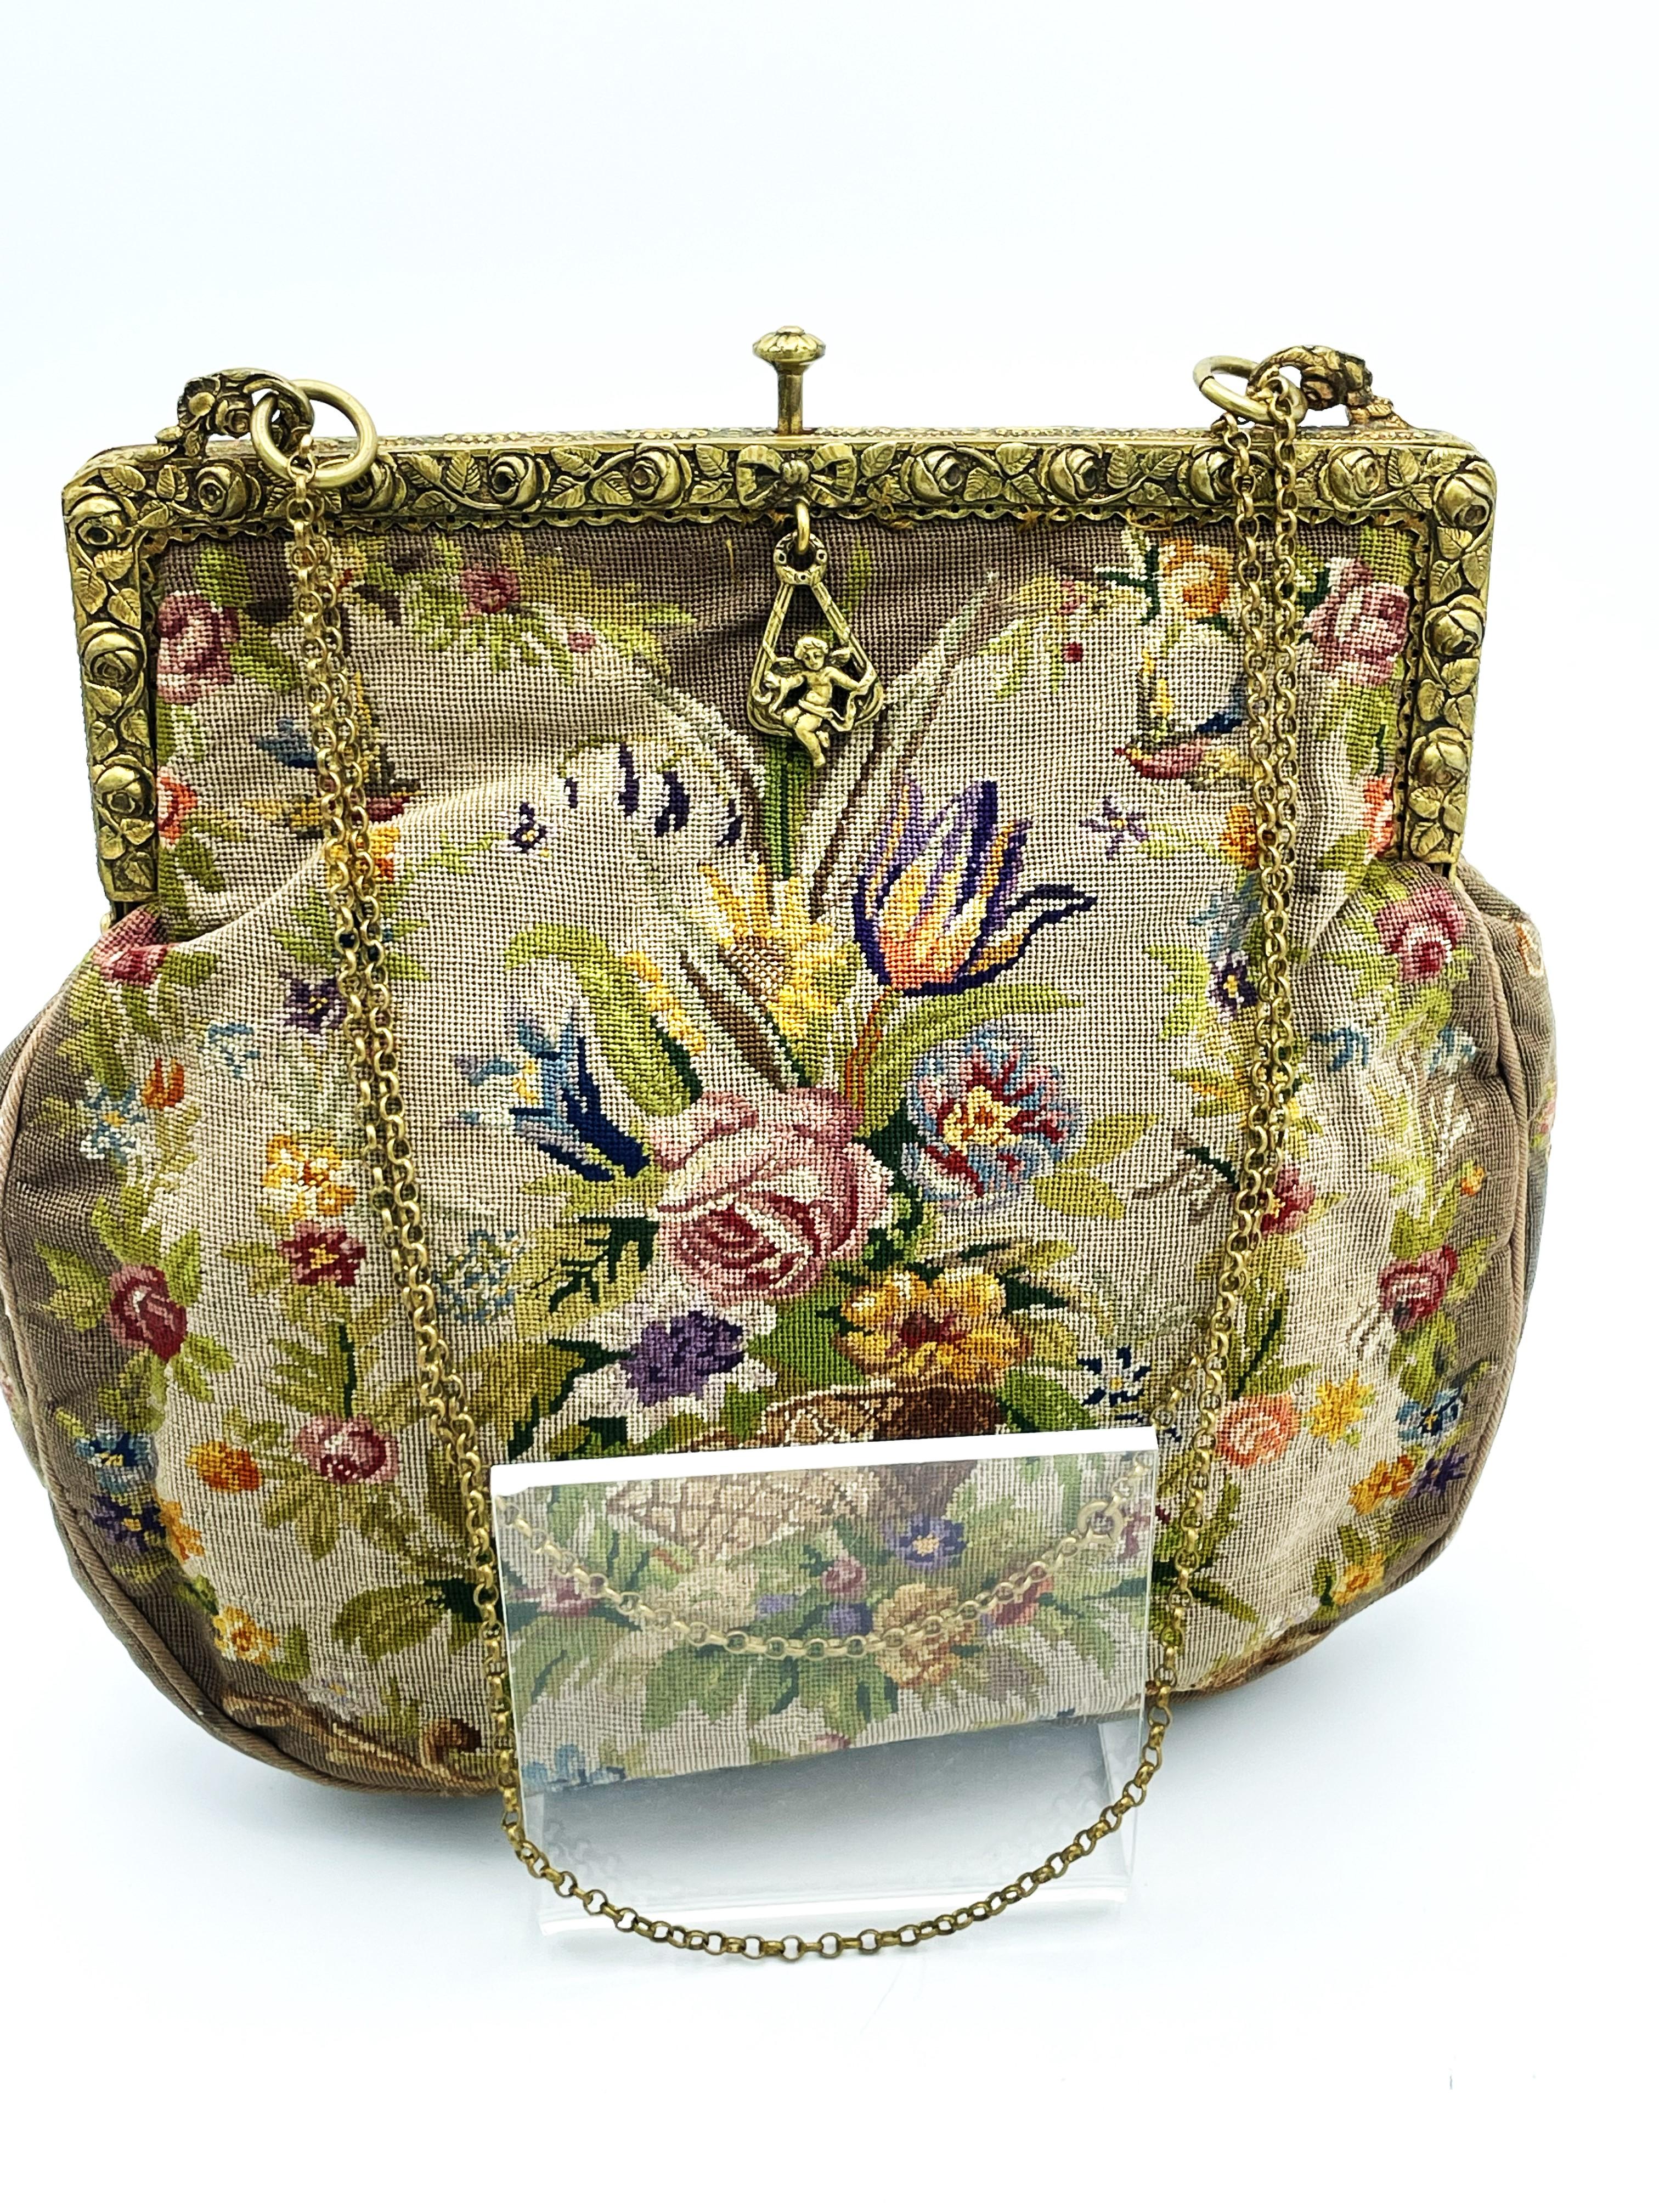 Eine handbestickte Abendtasche mit Petit-Point-Stickerei rundherum. Vorder- und Rückseite sowie die Seitenstreifen. Petit point ist eine feine Lupenarbeit, die Tasche wurde in Deutschland um die Jahrhundertwende bestickt. Um das 19. Jahrhundert.